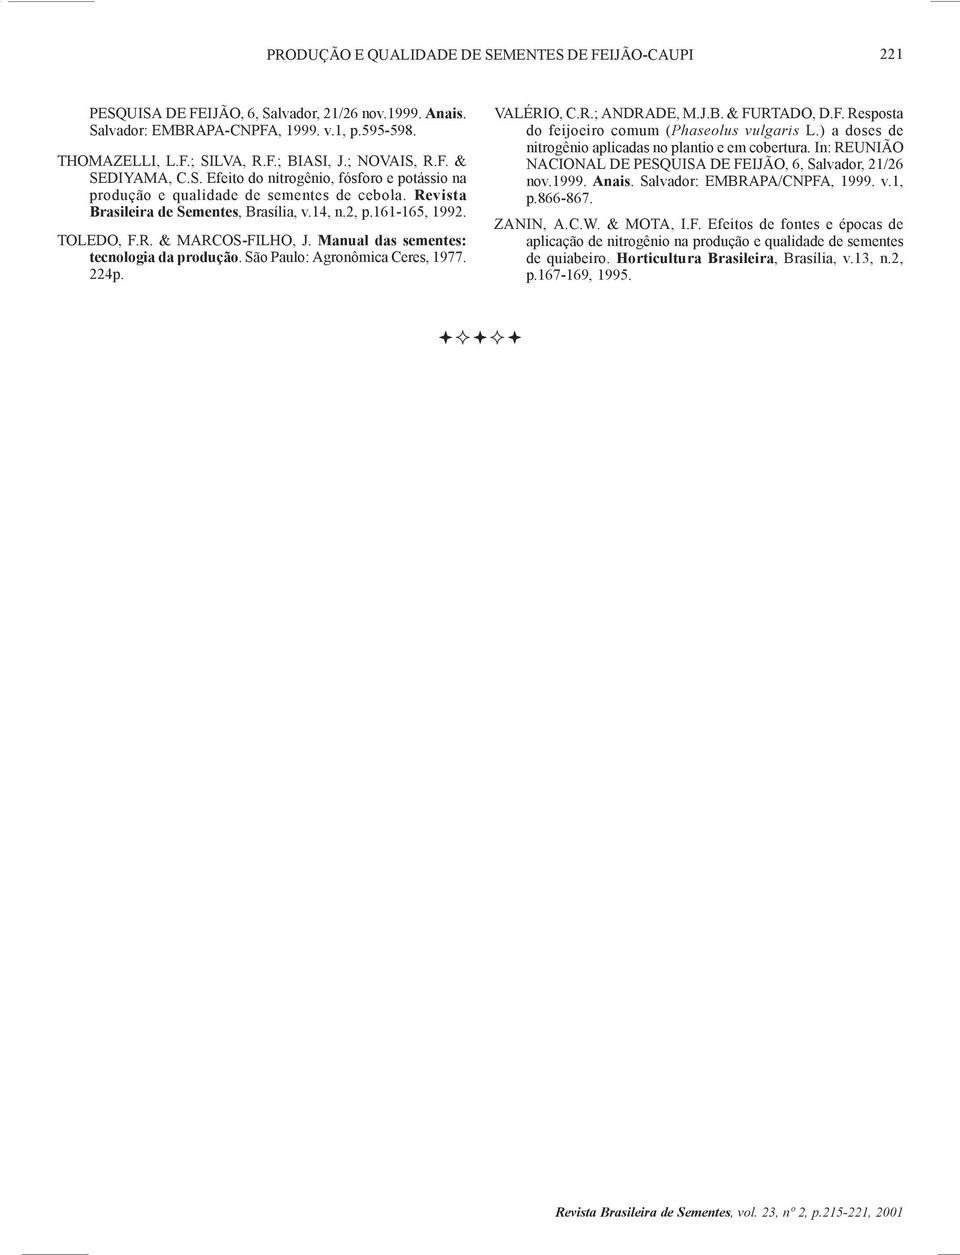 R.; ANDRADE, M.J.B. & FURTADO, D.F. Resposta do feijoeiro comum (Phaseolus vulgaris L.) a doses de nitrogênio aplicadas no plantio e em cobertura.